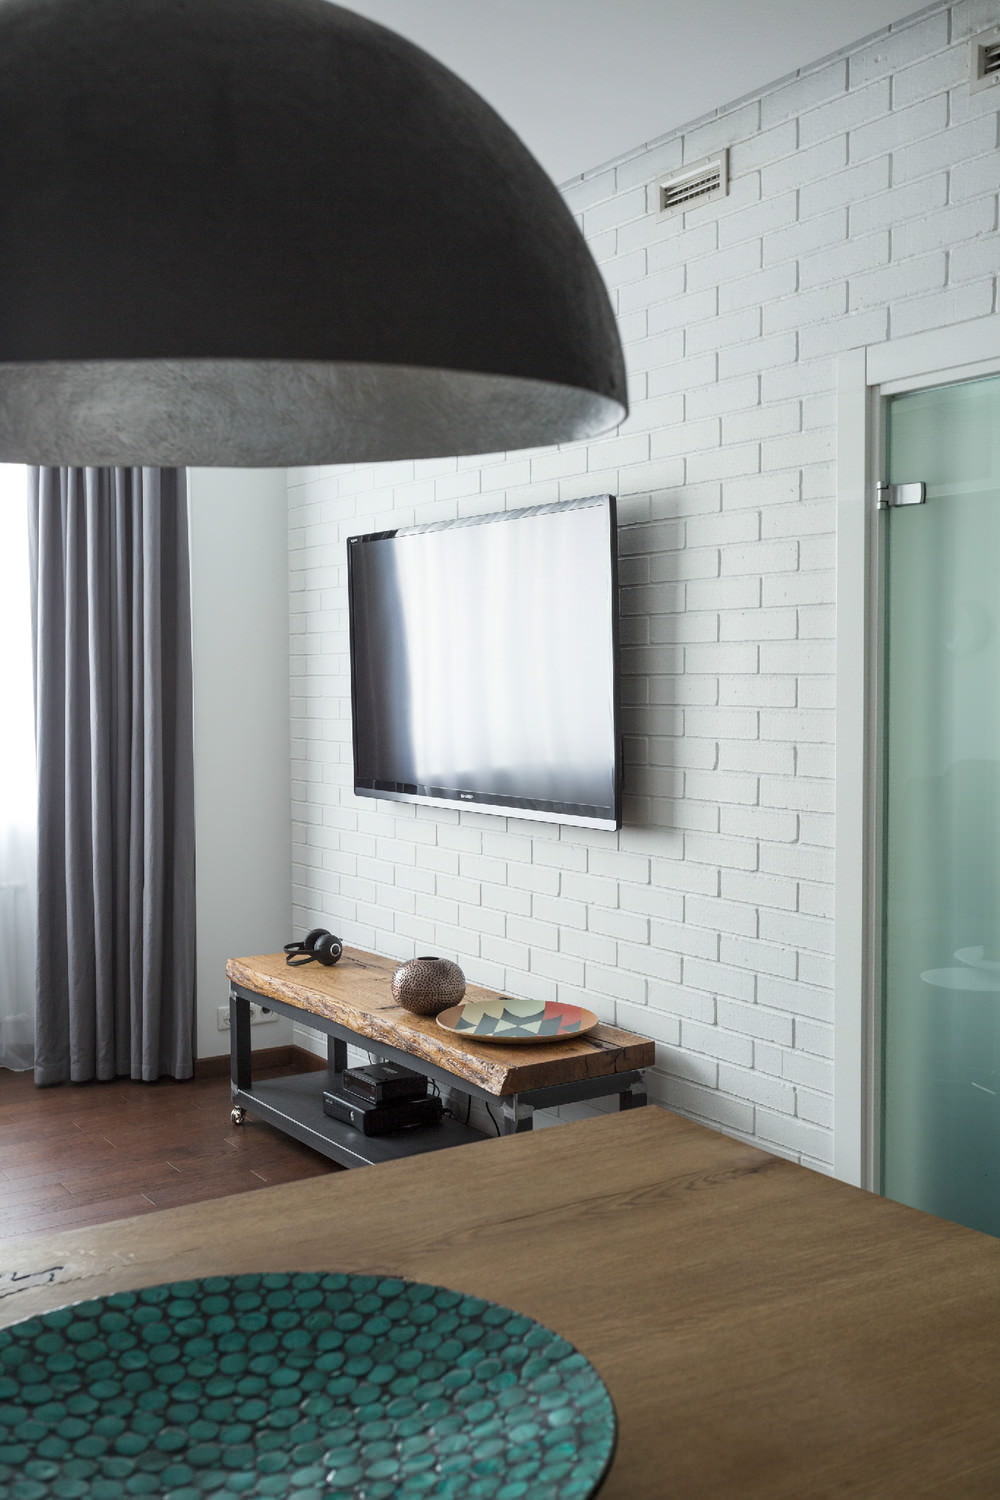 تلفزيون في تصميم شقة من غرفتين مساحتها 43 مترًا مربعًا. م.